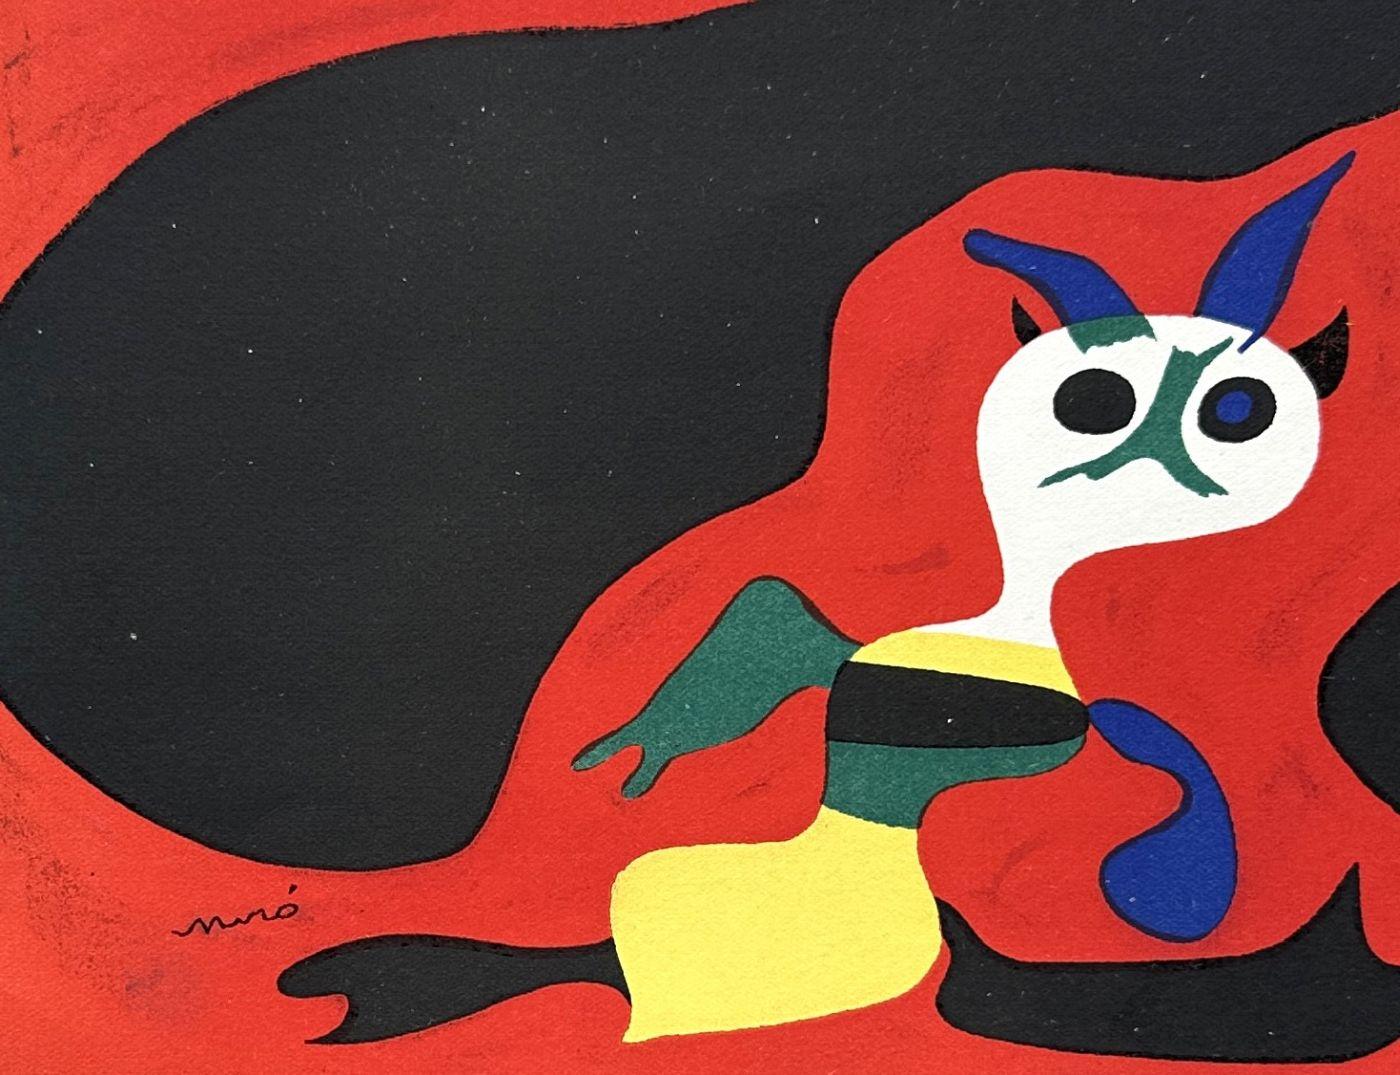 Joan MIRO (1893-1983)
Sommer : Surrealistische Figuren mit dem Mond, 1938

Lithographie in Farben
Gedruckte Unterschrift auf der Platte
Gedruckt in der Werkstatt von Mourlot und veröffentlicht von Teriade für 